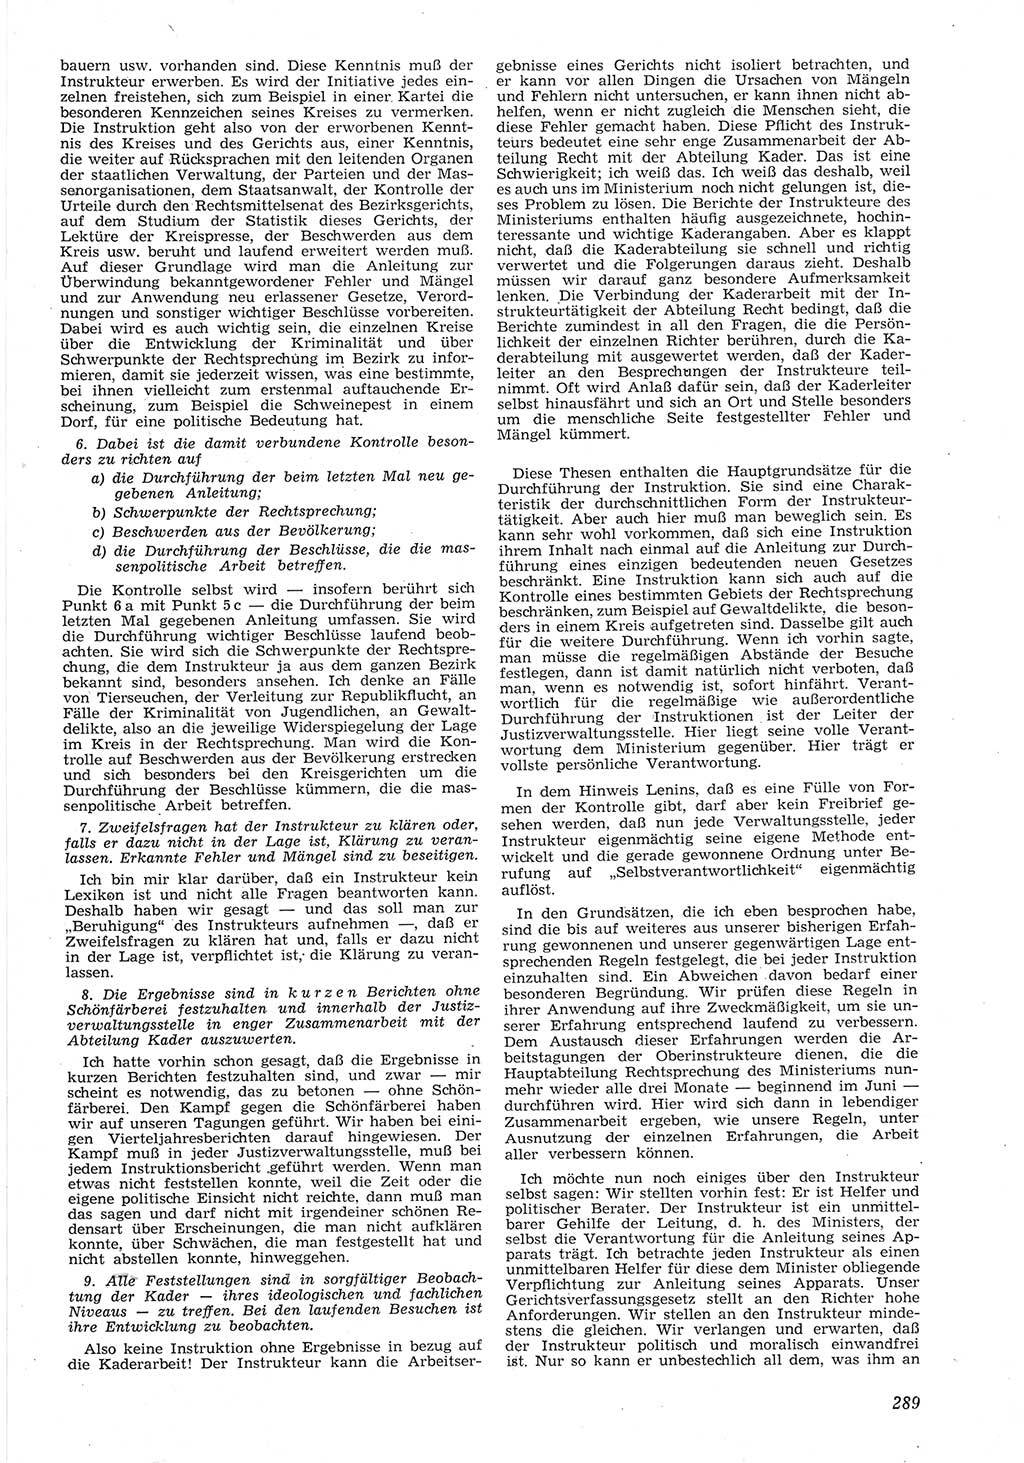 Neue Justiz (NJ), Zeitschrift für Recht und Rechtswissenschaft [Deutsche Demokratische Republik (DDR)], 8. Jahrgang 1954, Seite 289 (NJ DDR 1954, S. 289)